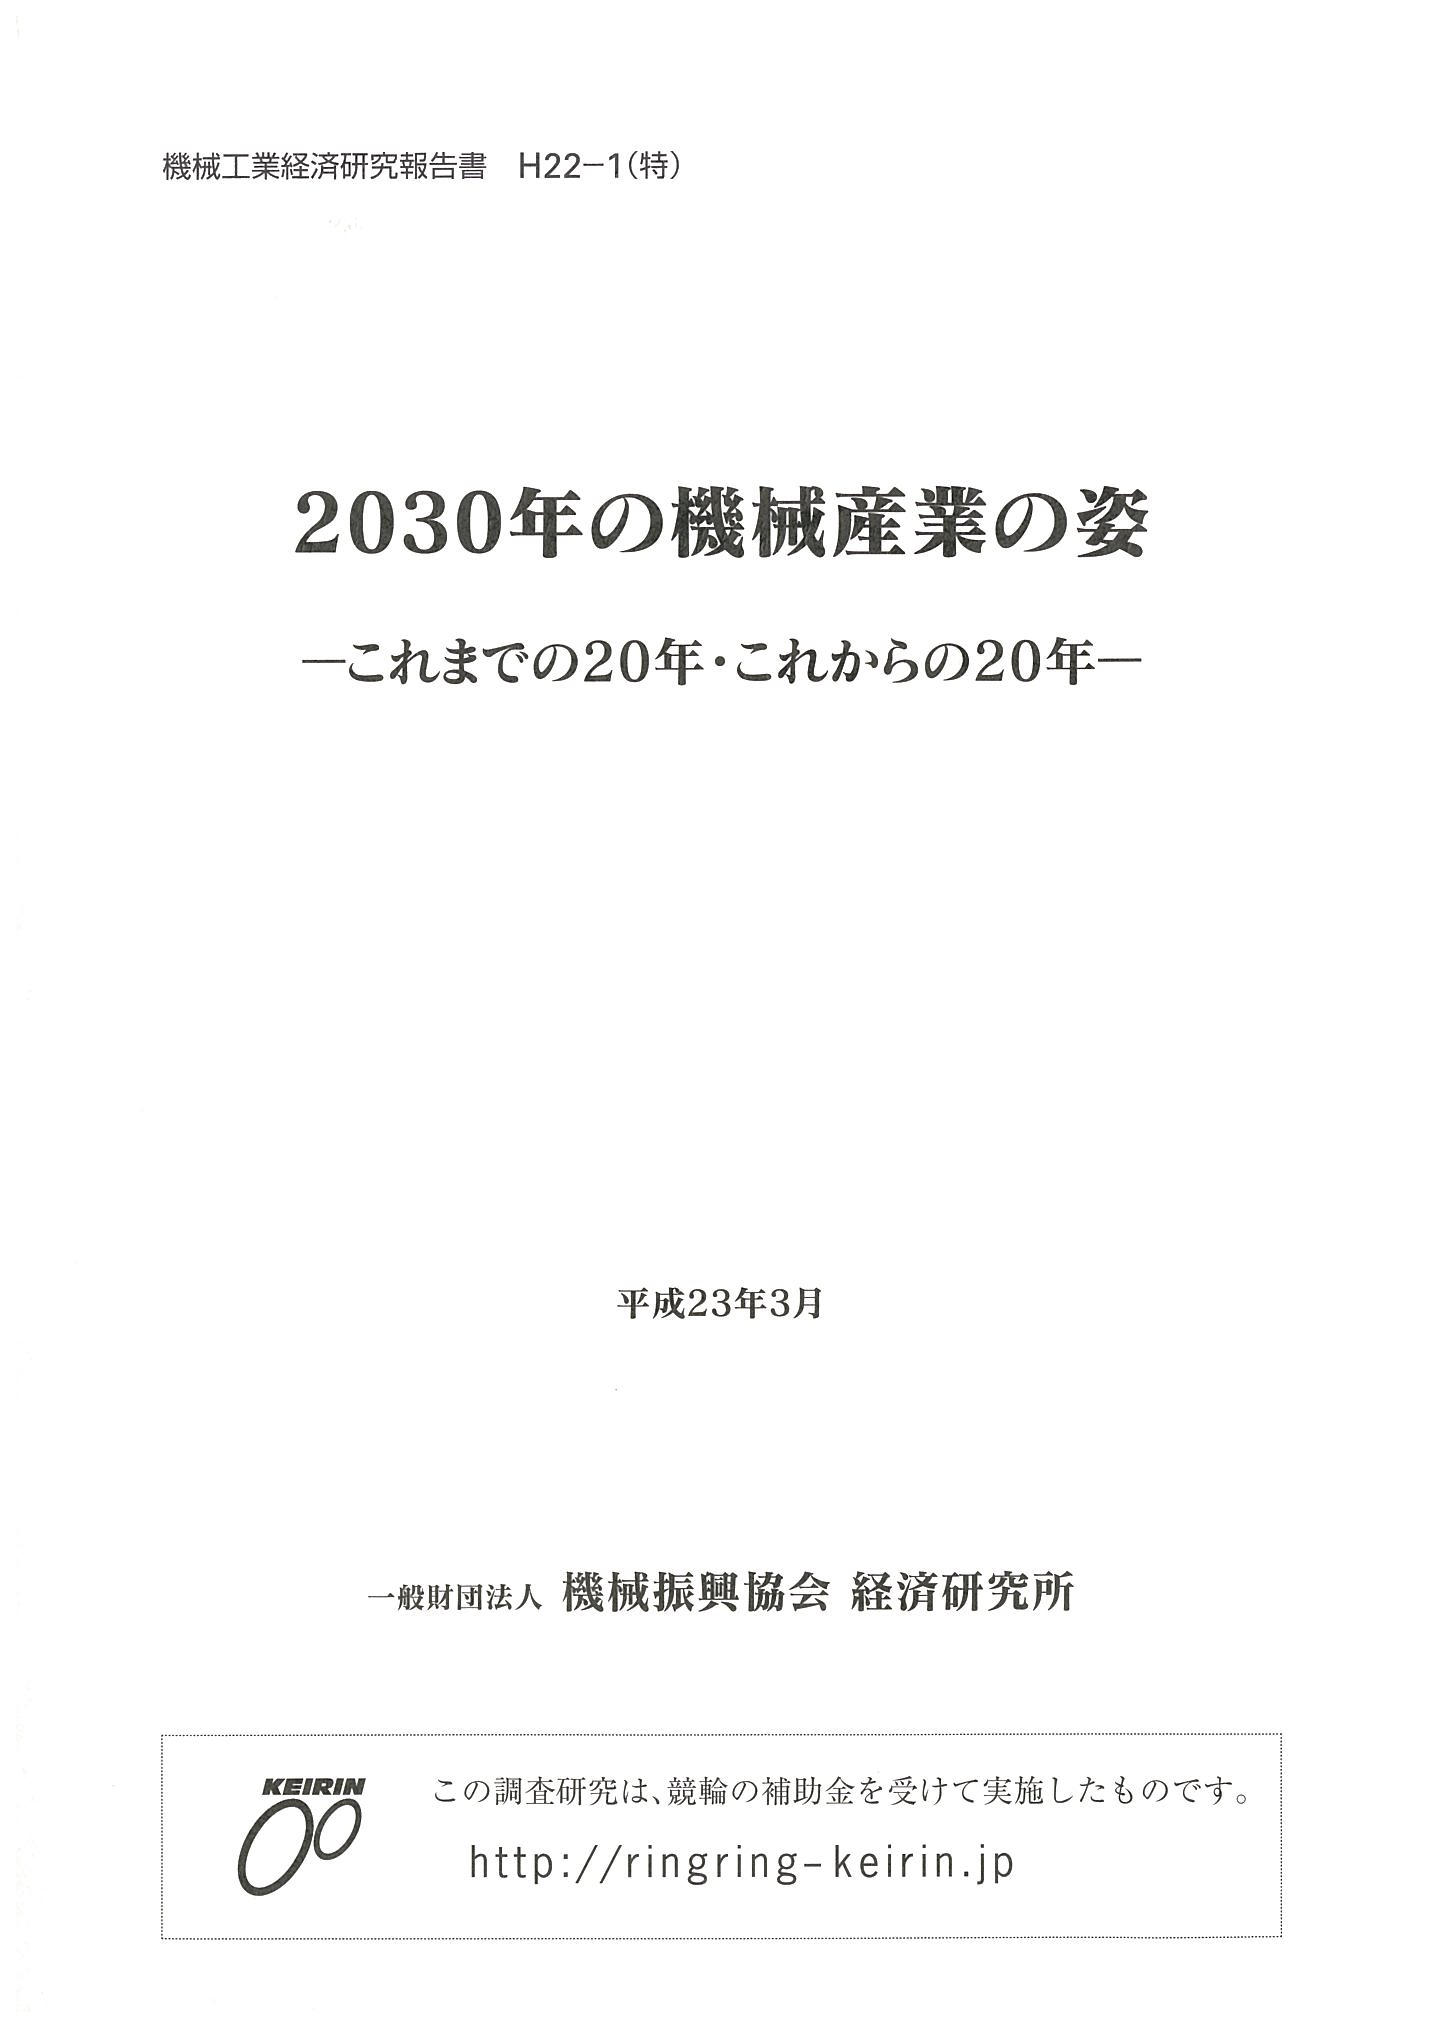 H22-1(特)_2030kikaisangyo.jpg